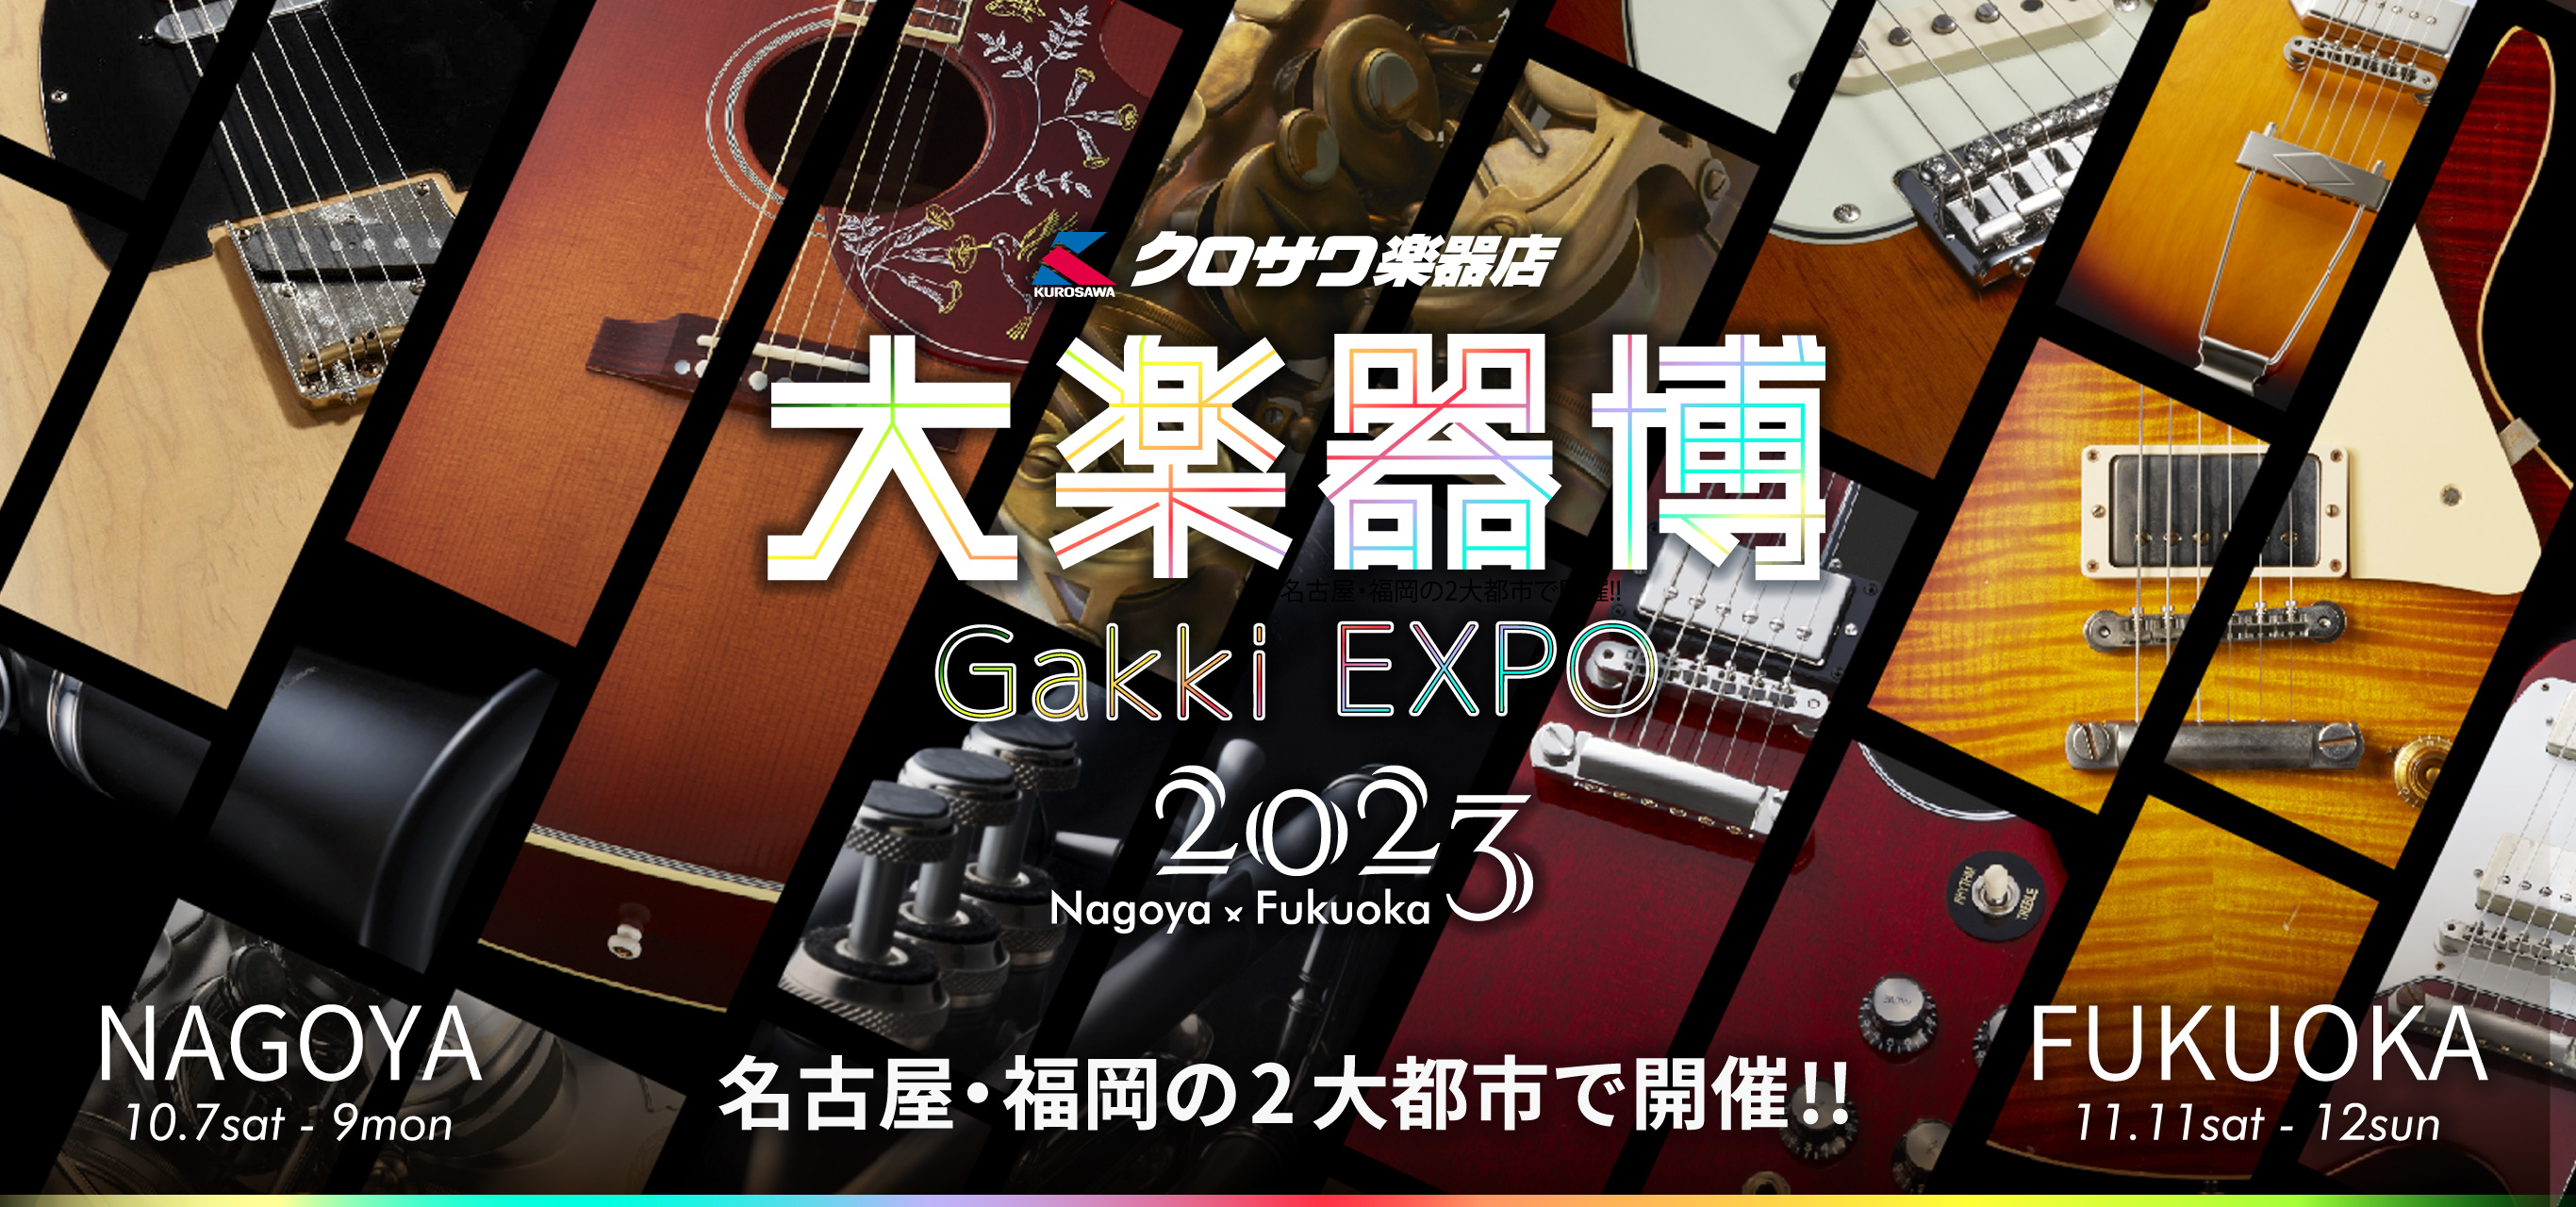 クロサワ楽器店 大楽器博2023 -Gakki EXPO’2023-